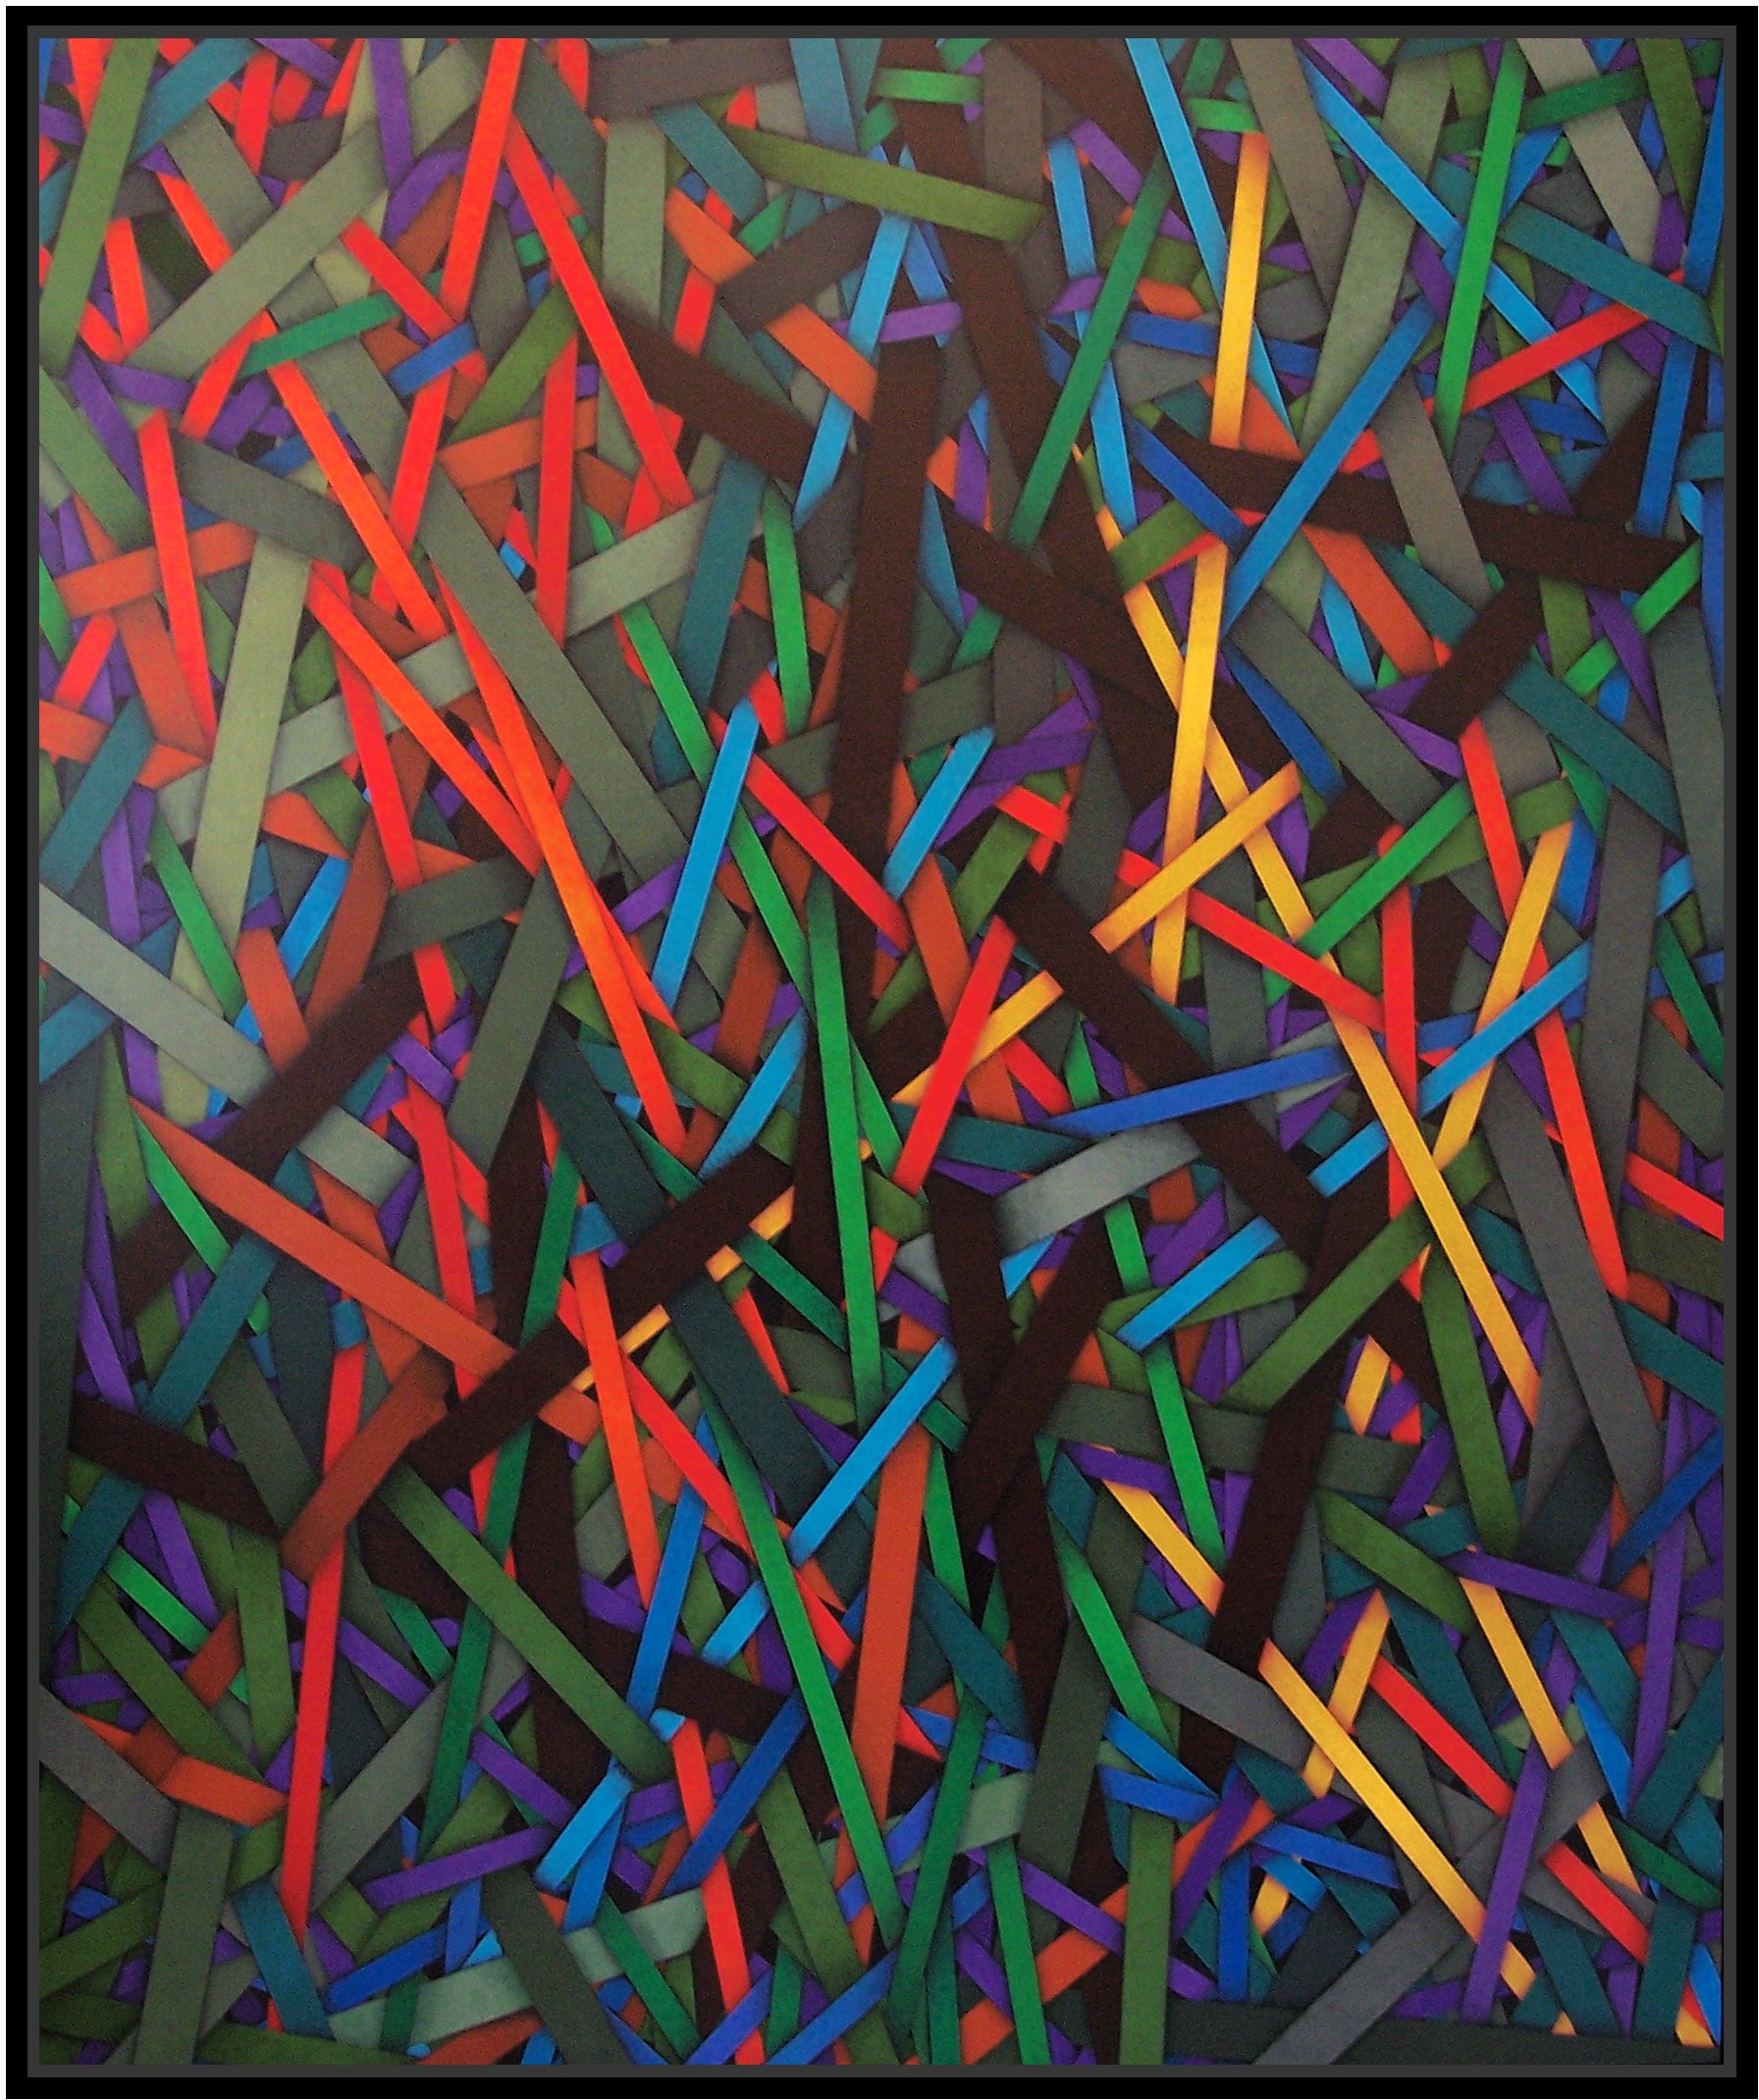 Barricade, cm 150x180, acrylic color on linen canvas